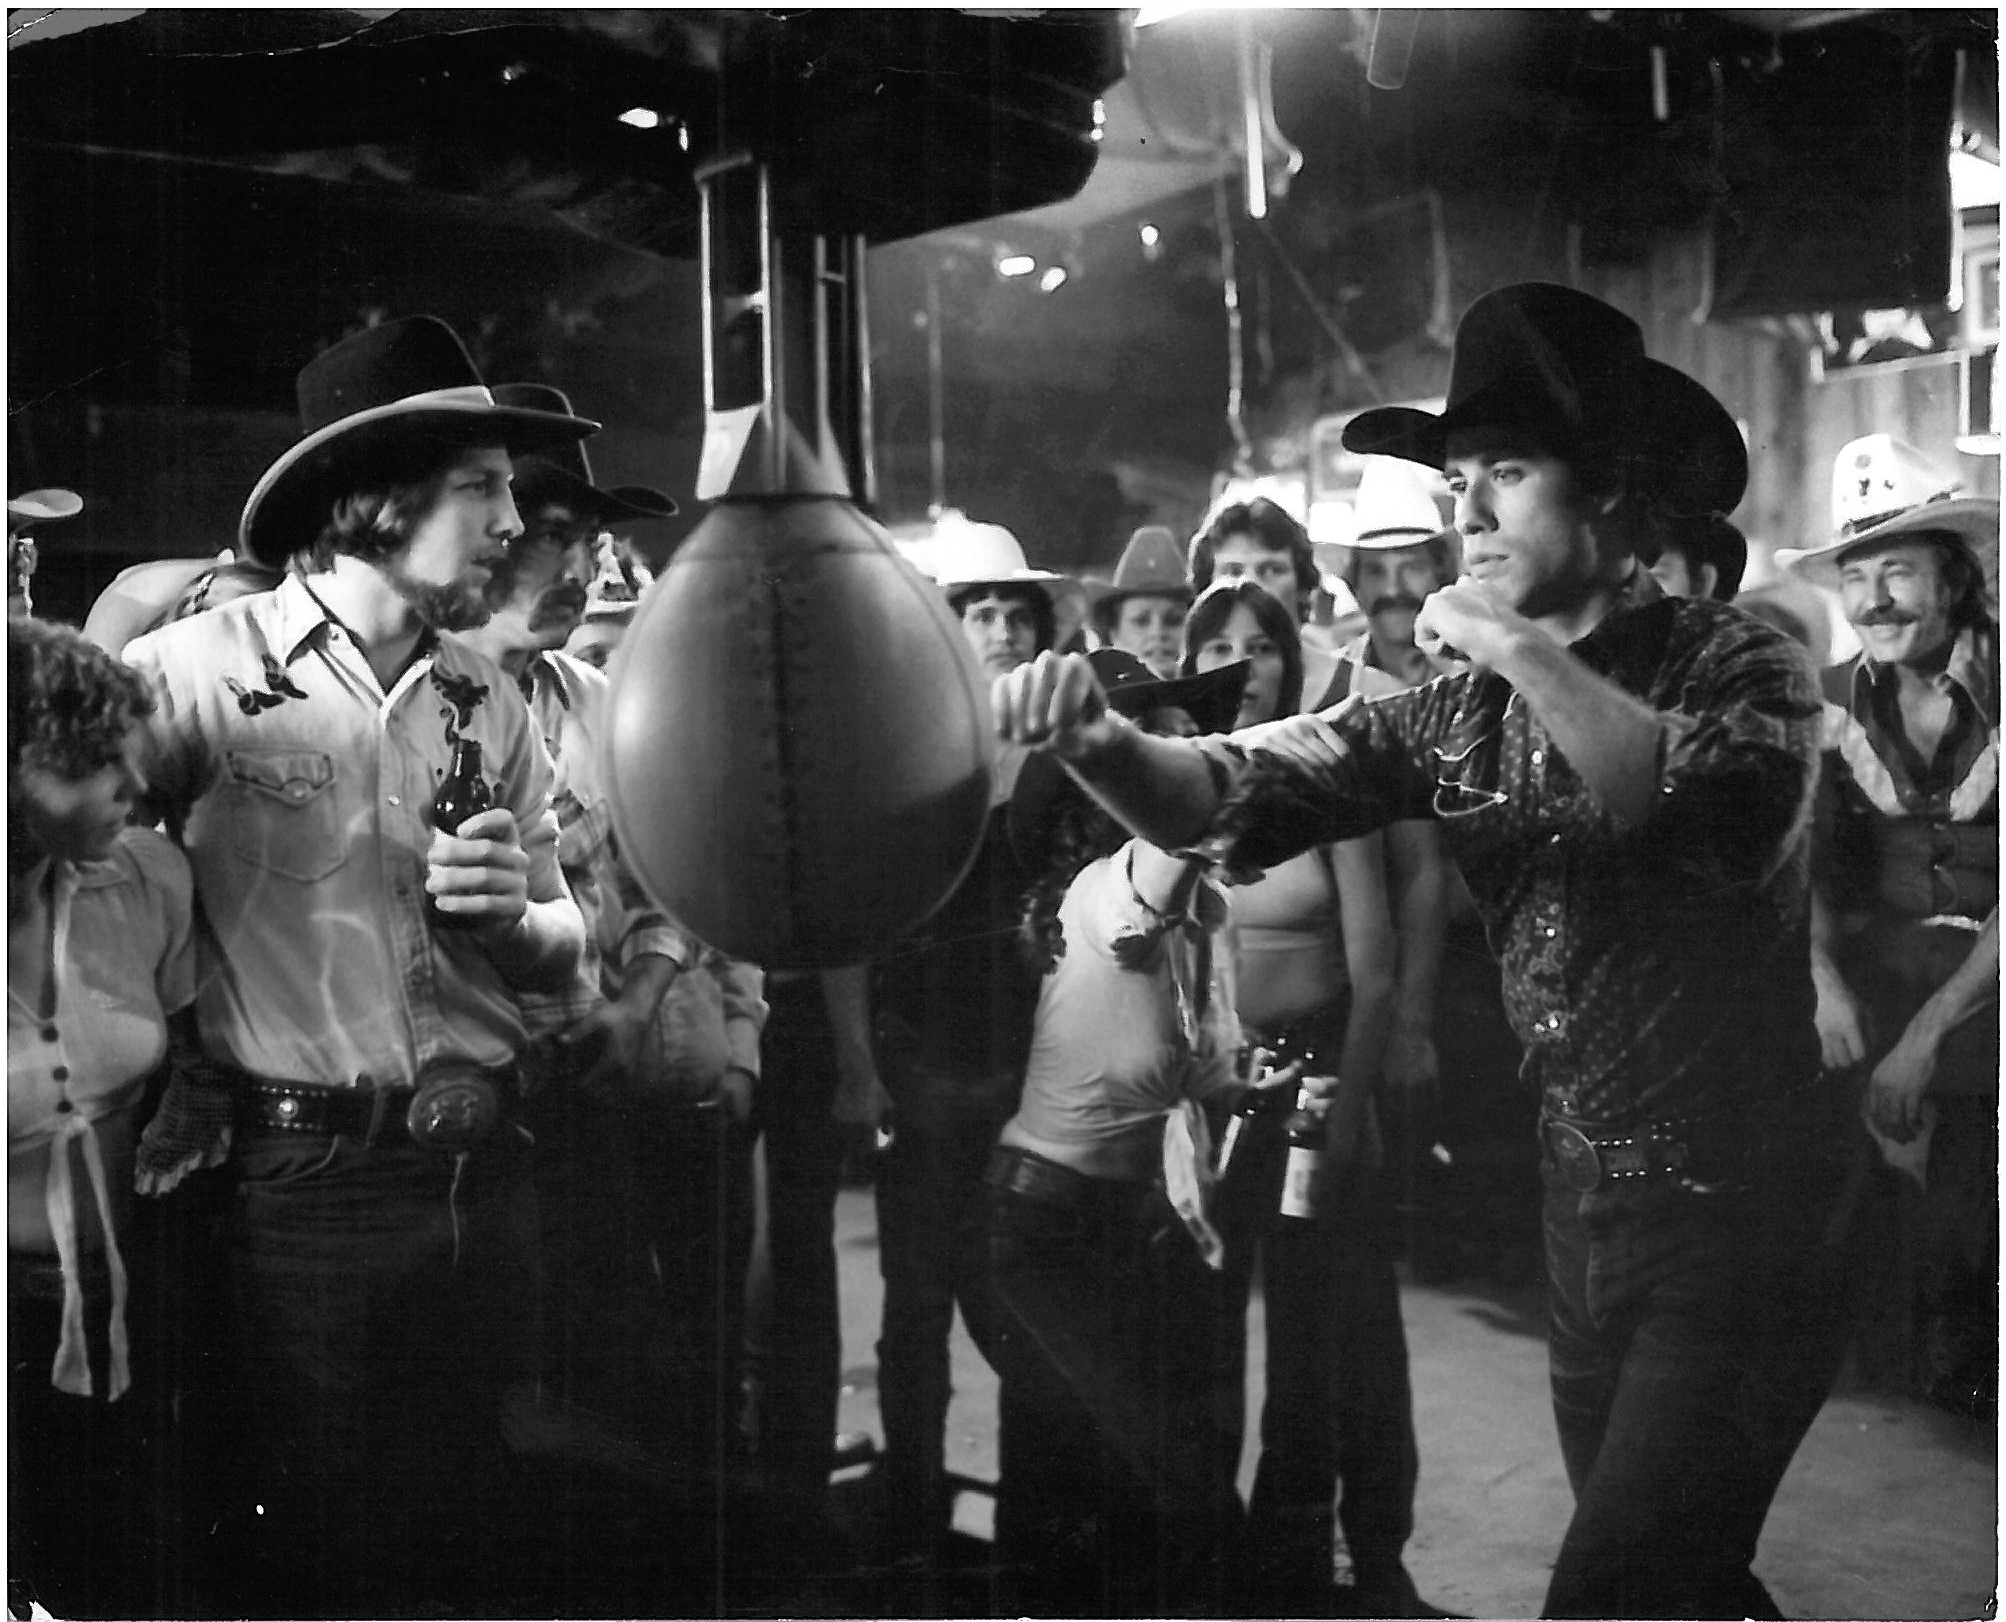 john travolta in urban cowboy punching bag in cowboy bar